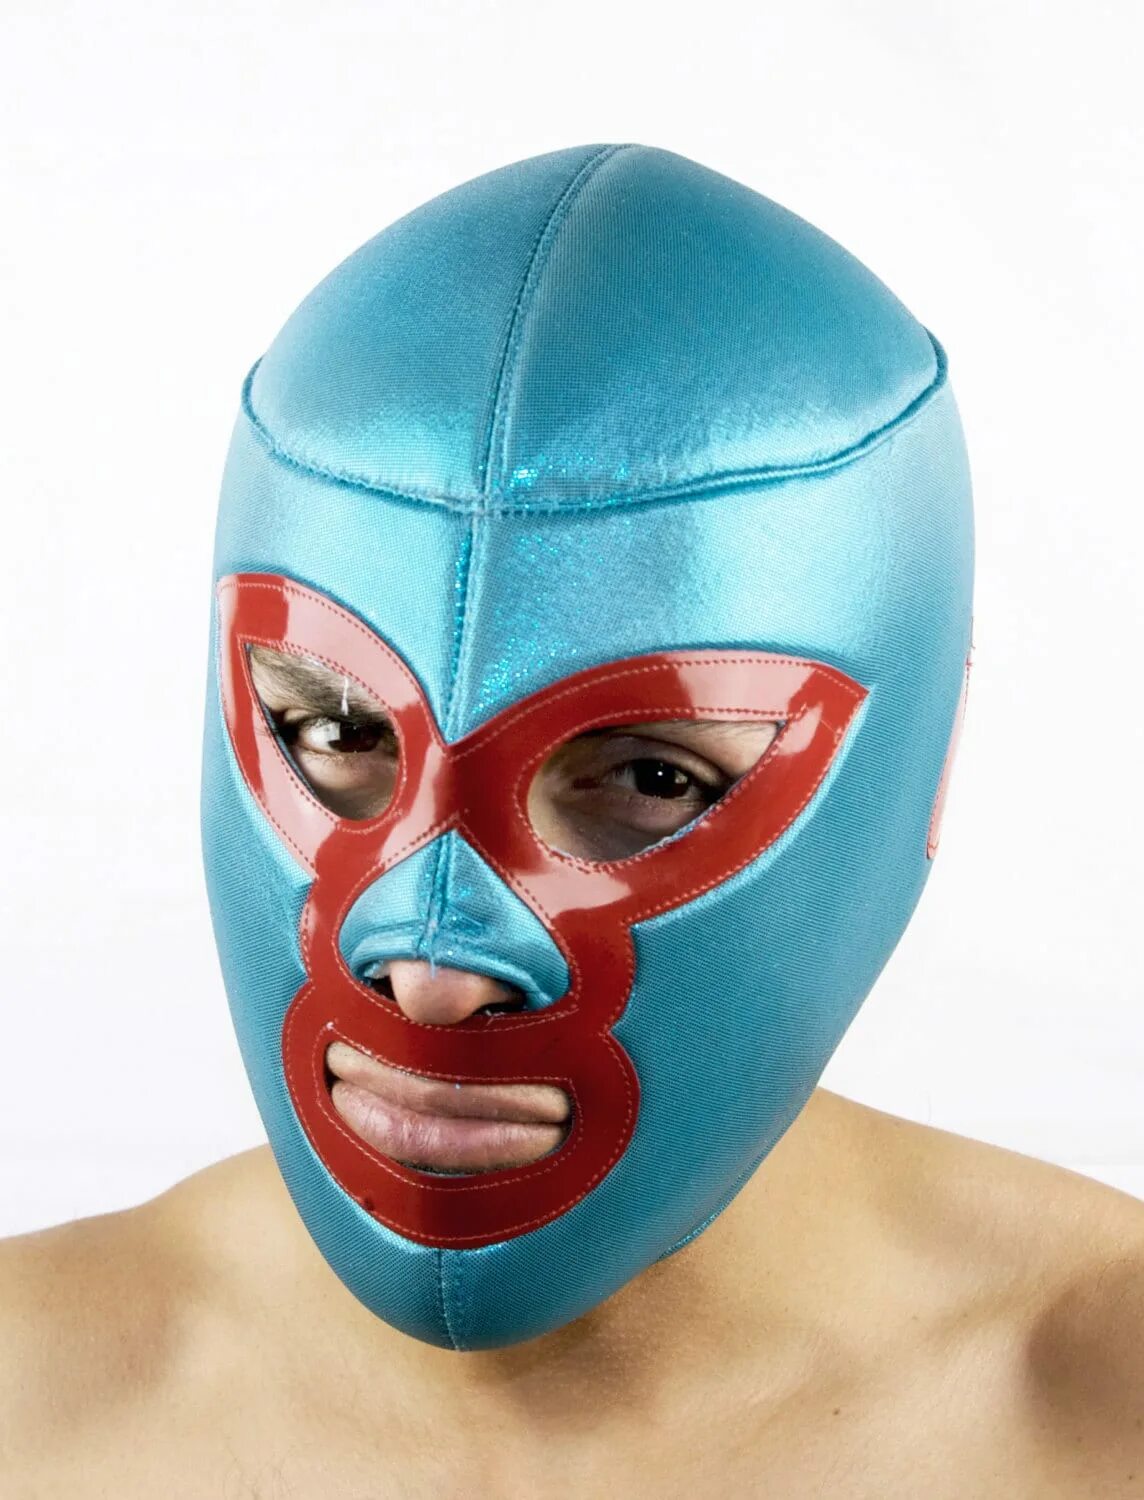 Original маска. Начо Либре маска. Луча Либре маски. Оригинальные маски. Необычные маски для лица.